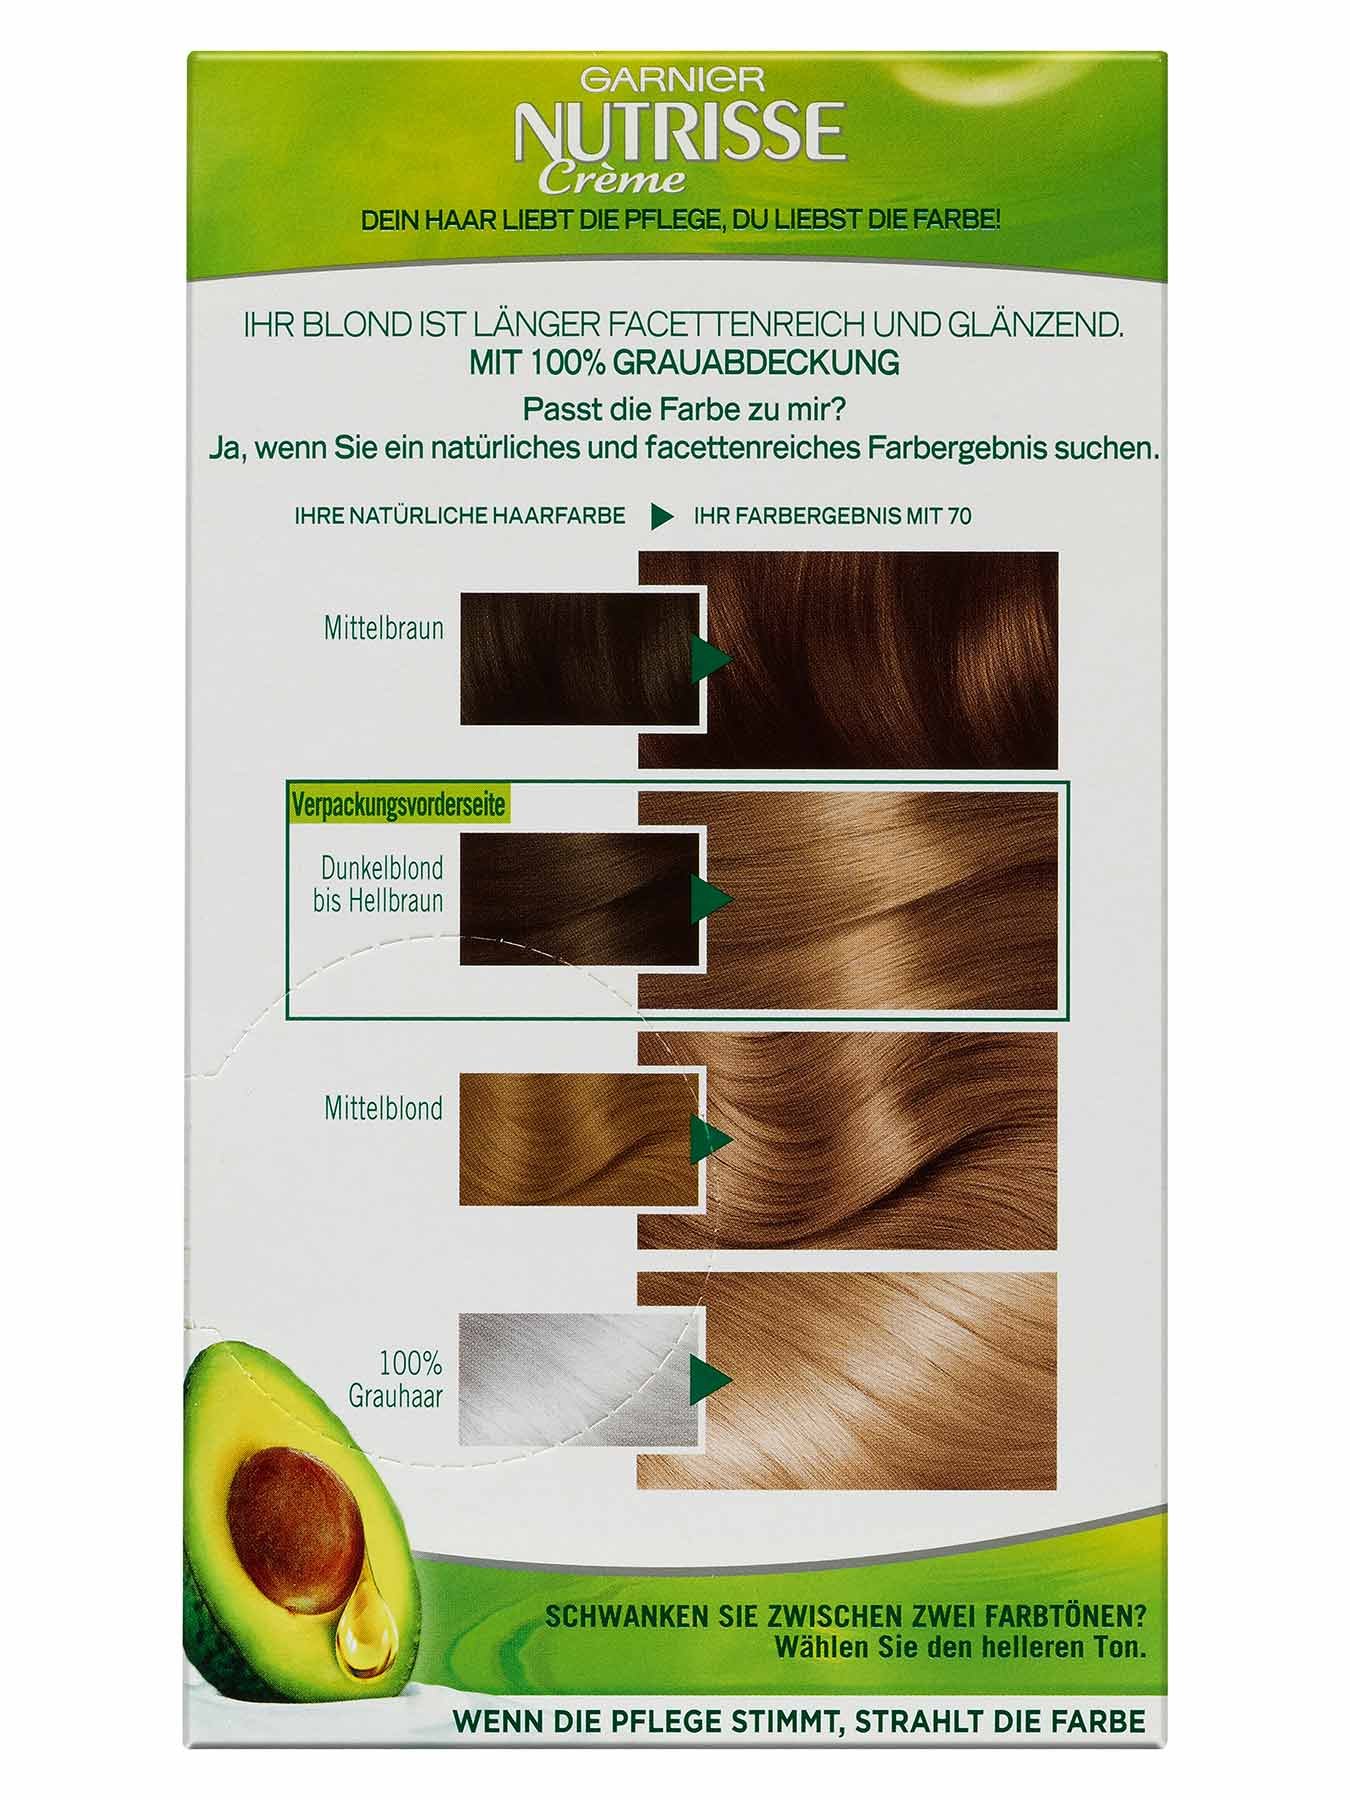 70-Toffee-Mittelblond-Dauerhafte-Pflege-Haarfarbe-Nutrisse-Creme-1Stk-Rueckseite-Garnier-DE-gr